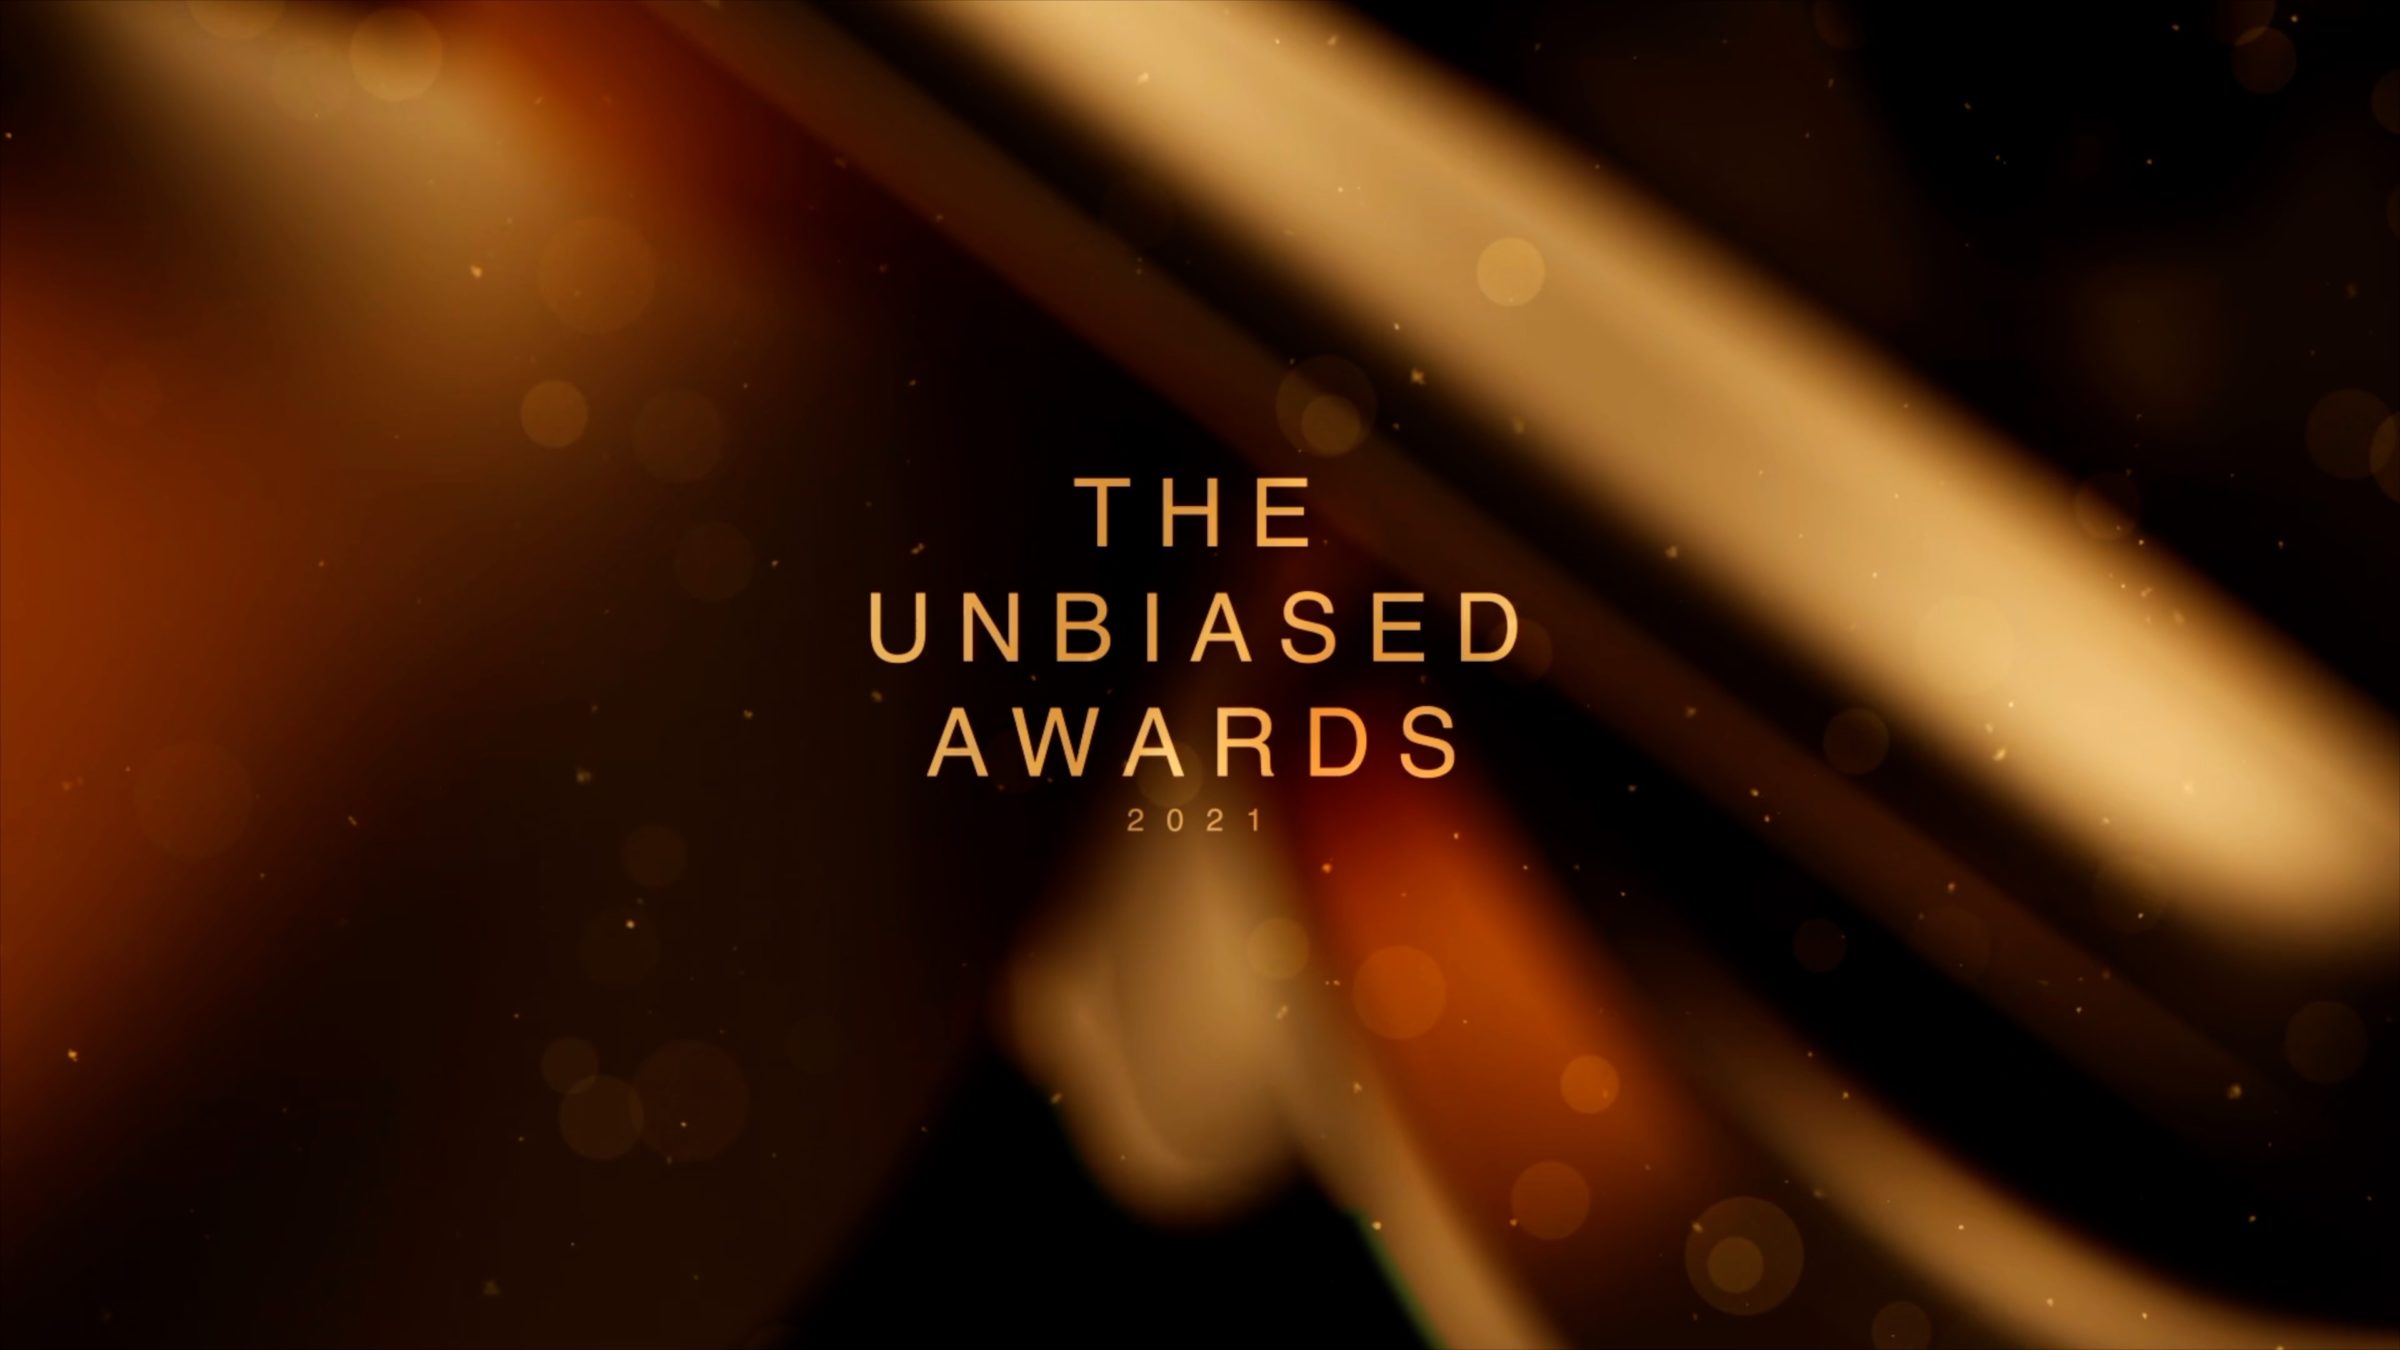 The Unbiased Awards 2021